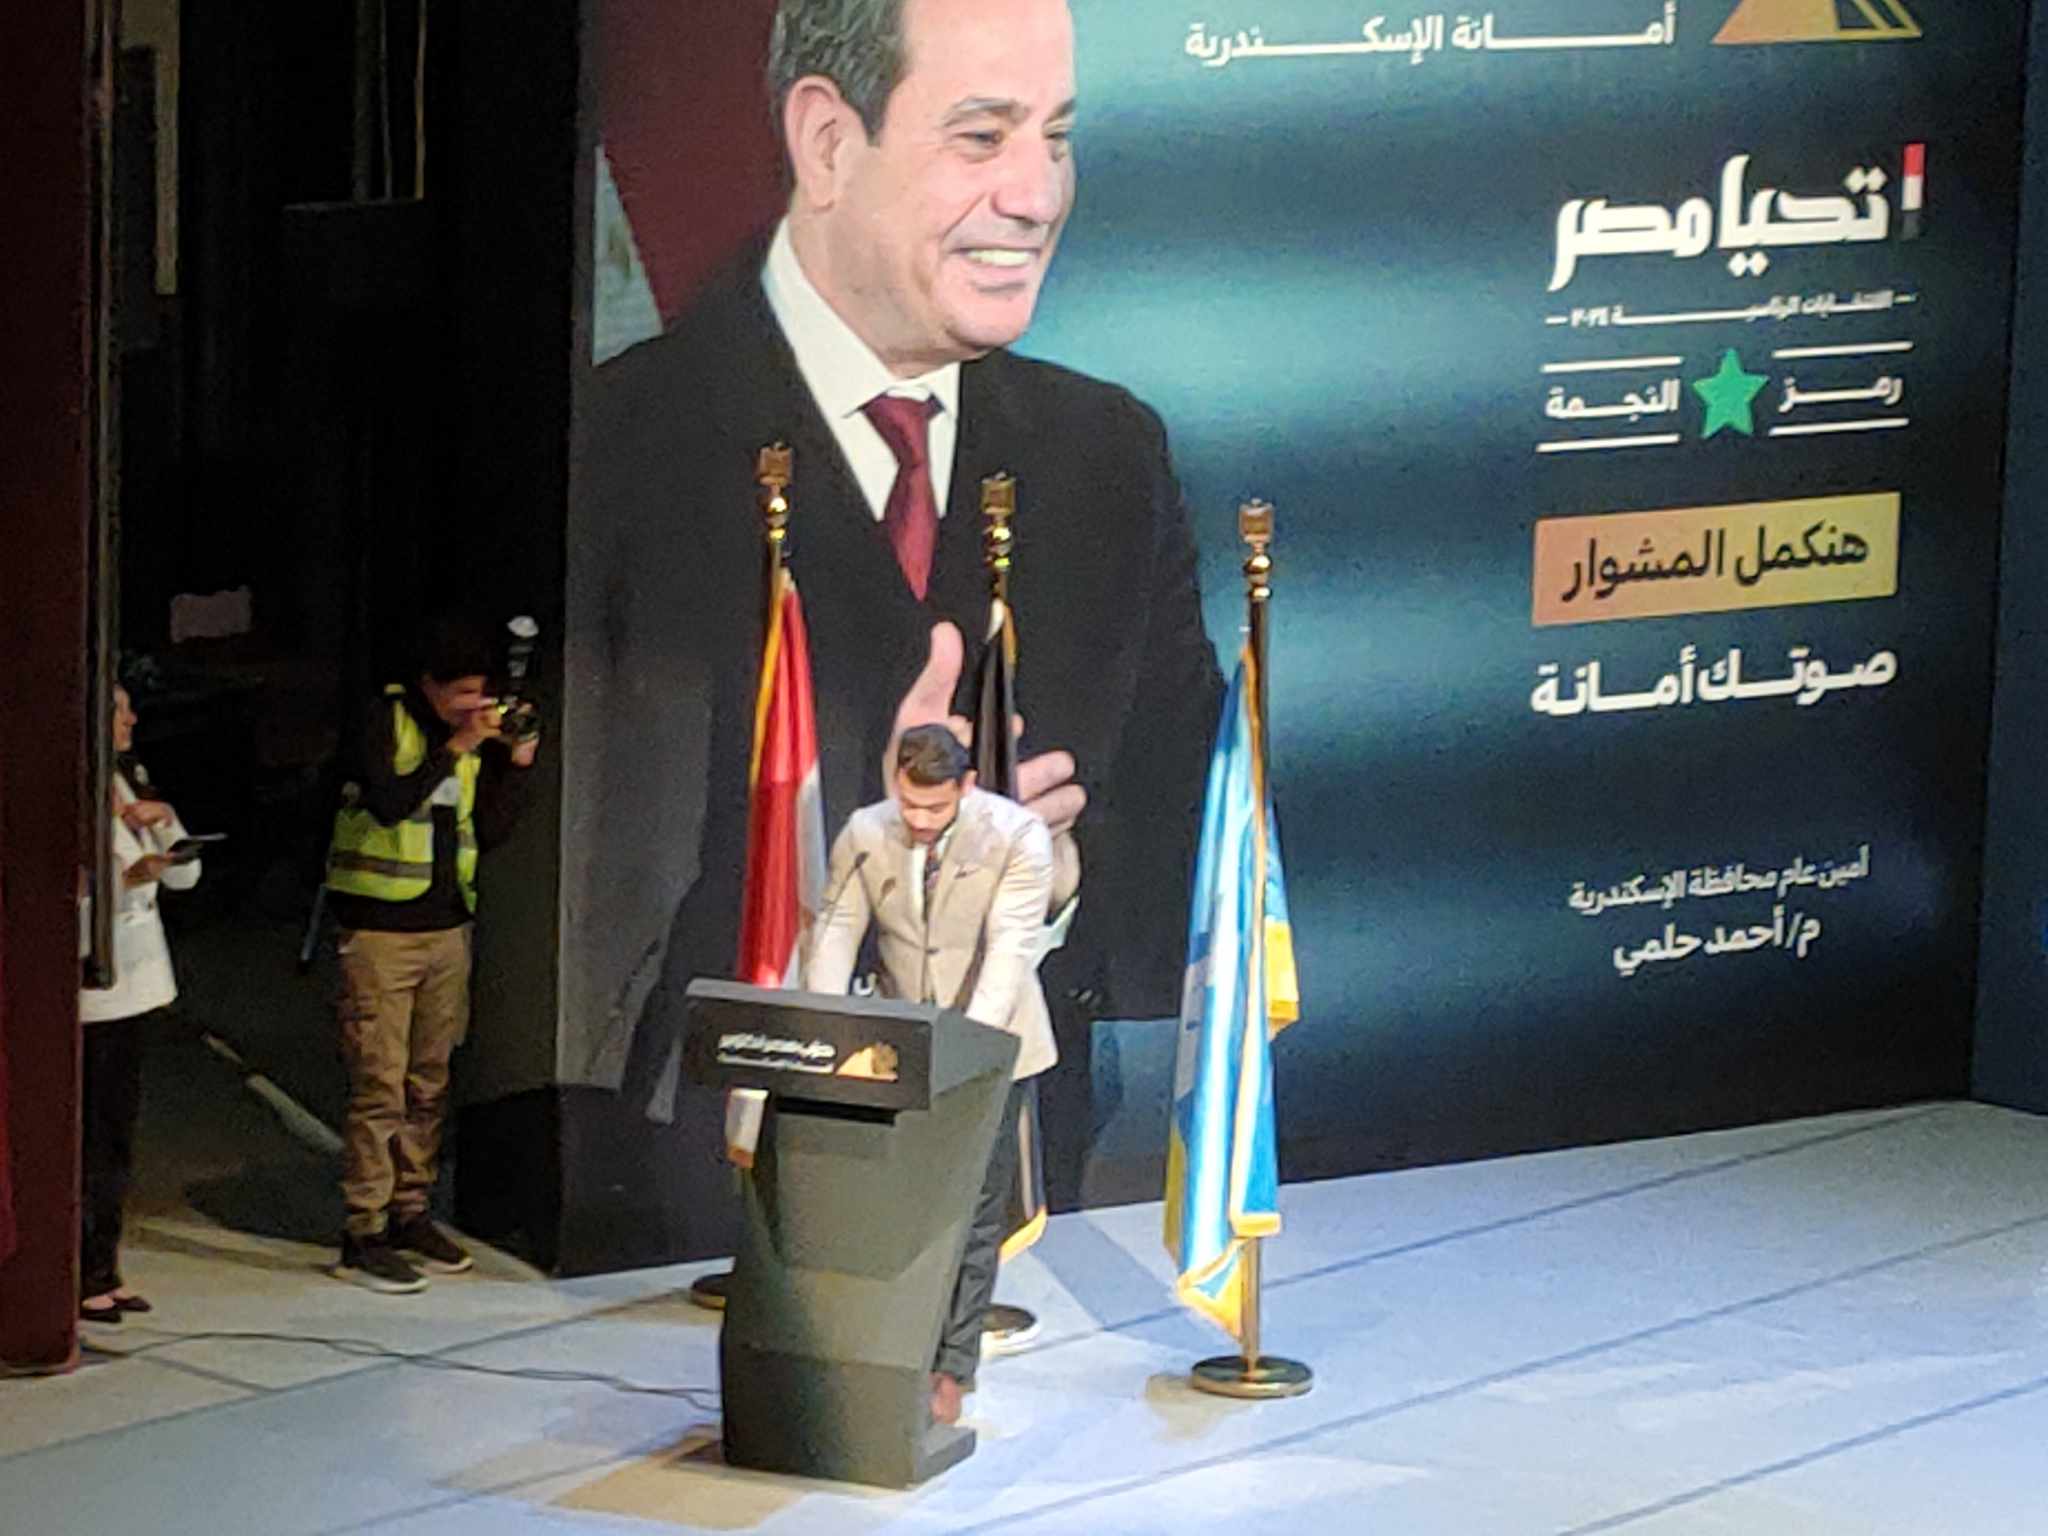 كلمه المهندس أحمد حلمي خلال افتتاح مؤتمر دعم المرشح الرئاسي عبد الفتاح السيسي